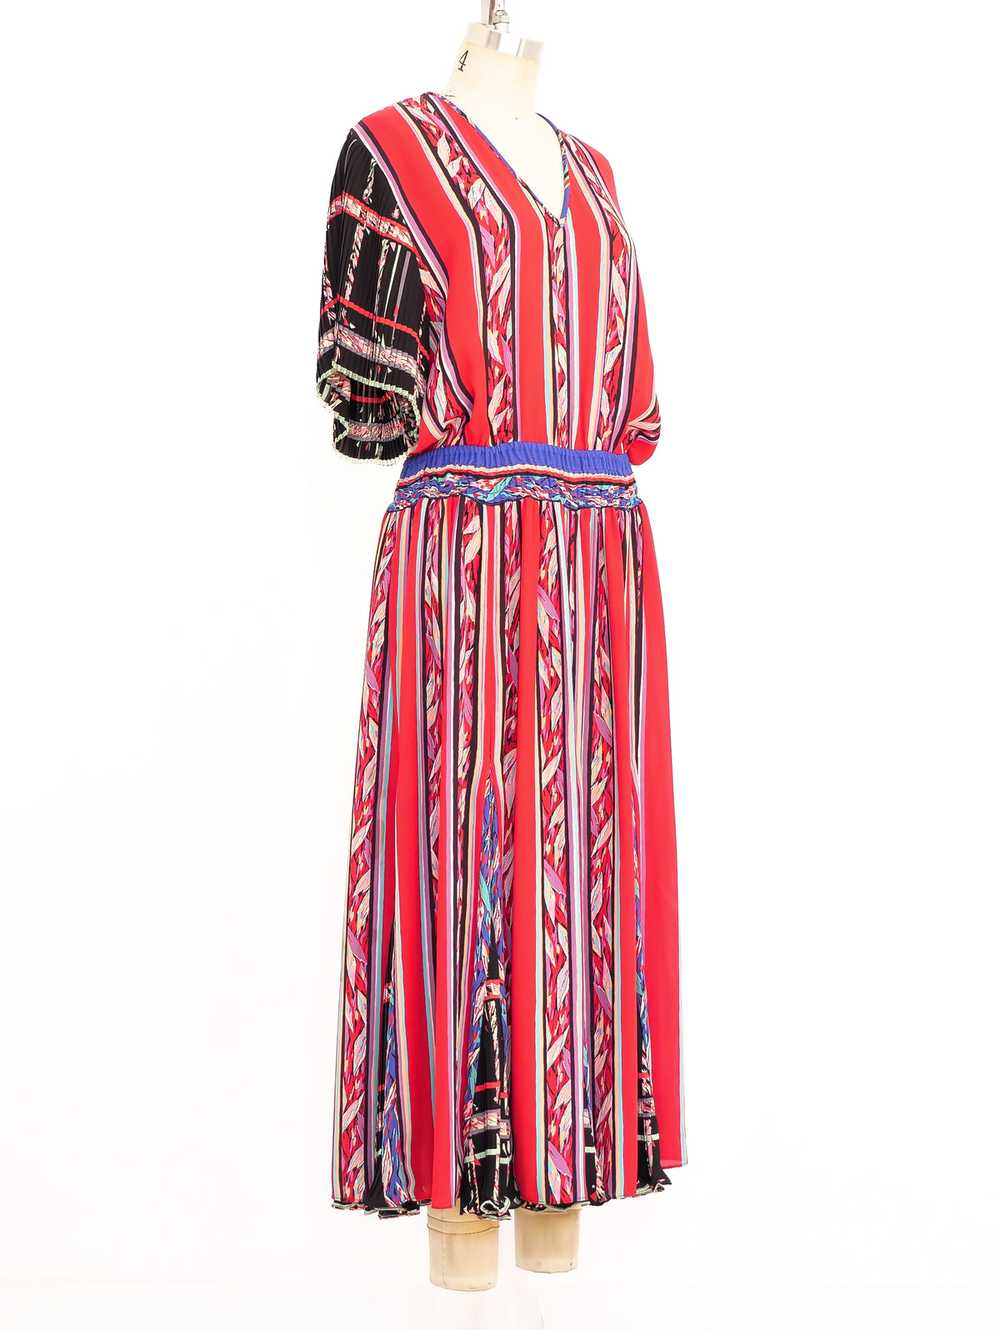 Diane Freis Mixed Print Midi Dress - image 3